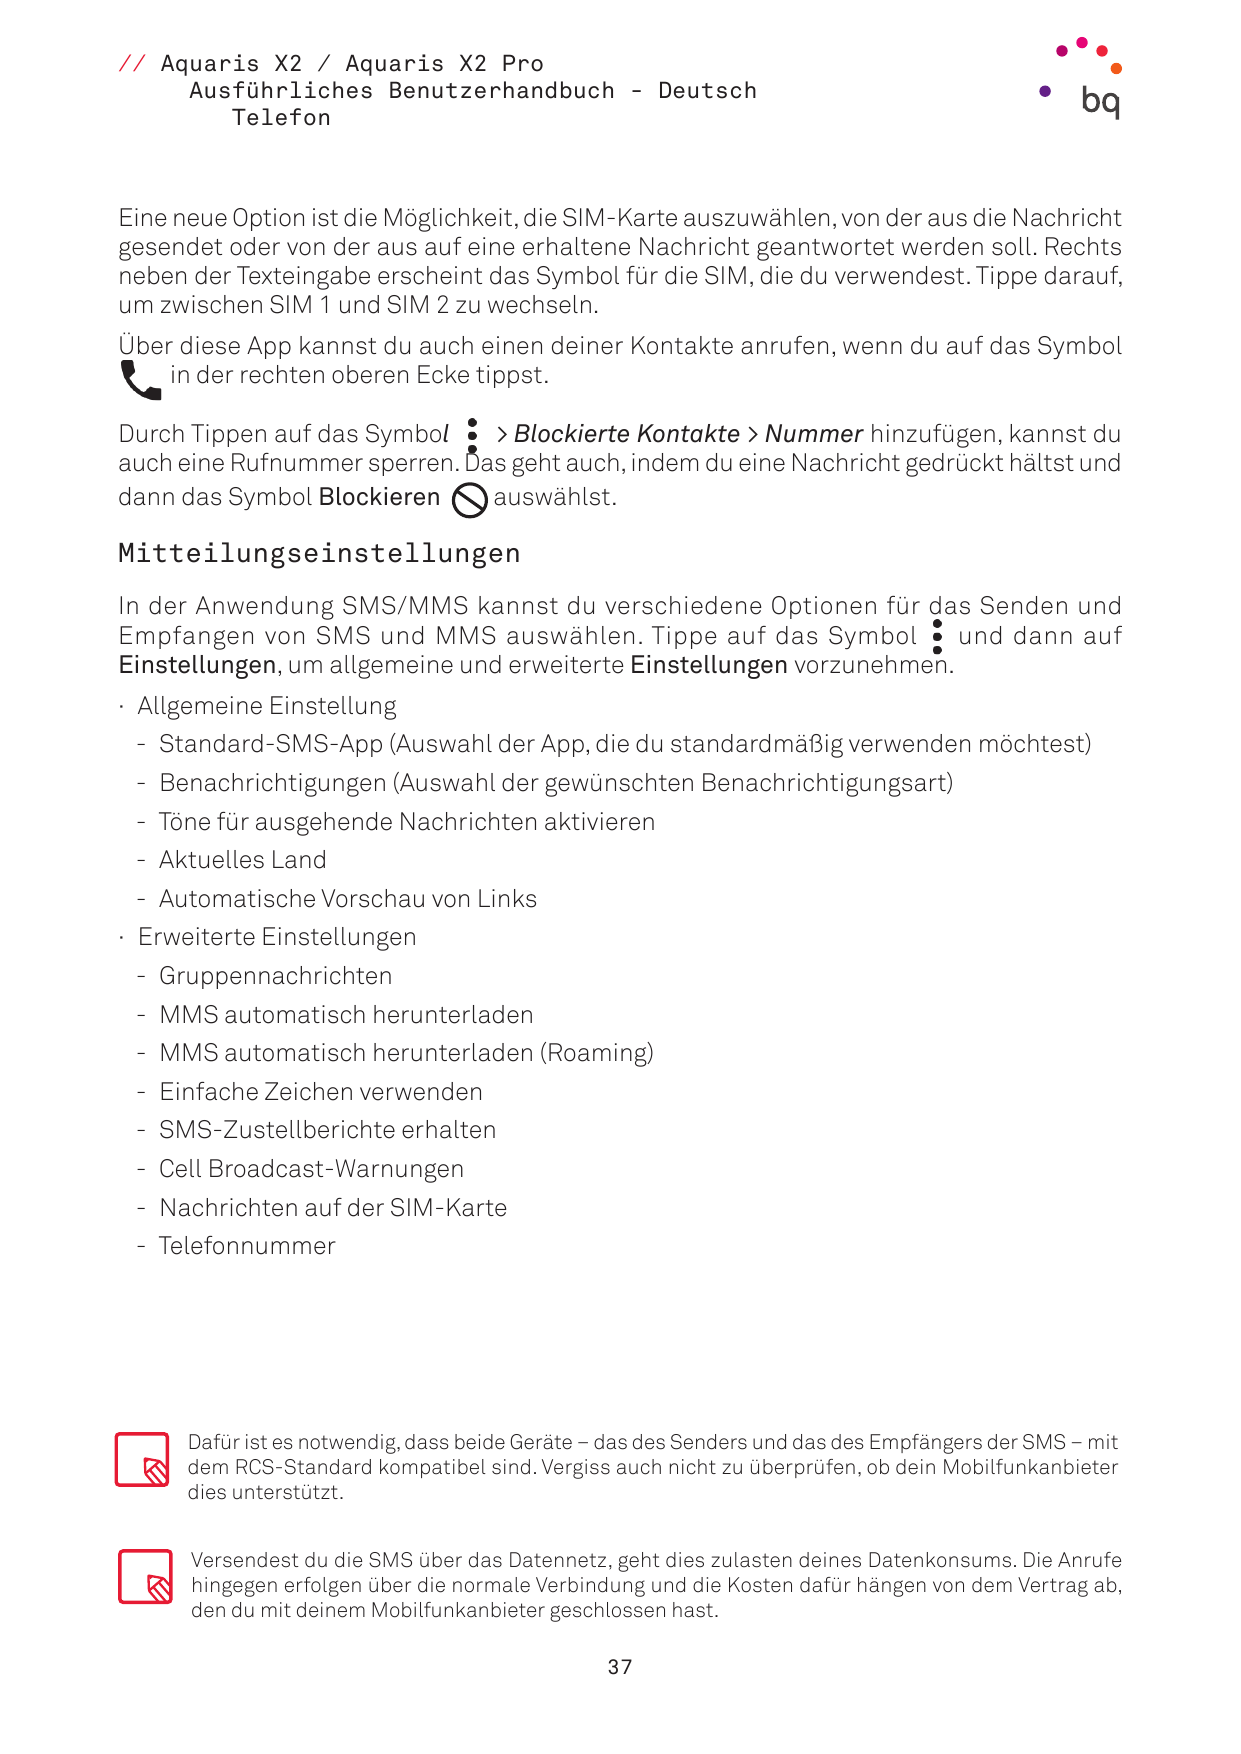 // Aquaris X2 / Aquaris X2 ProAusführliches Benutzerhandbuch - DeutschTelefonEine neue Option ist die Möglichkeit, die SIM-Karte